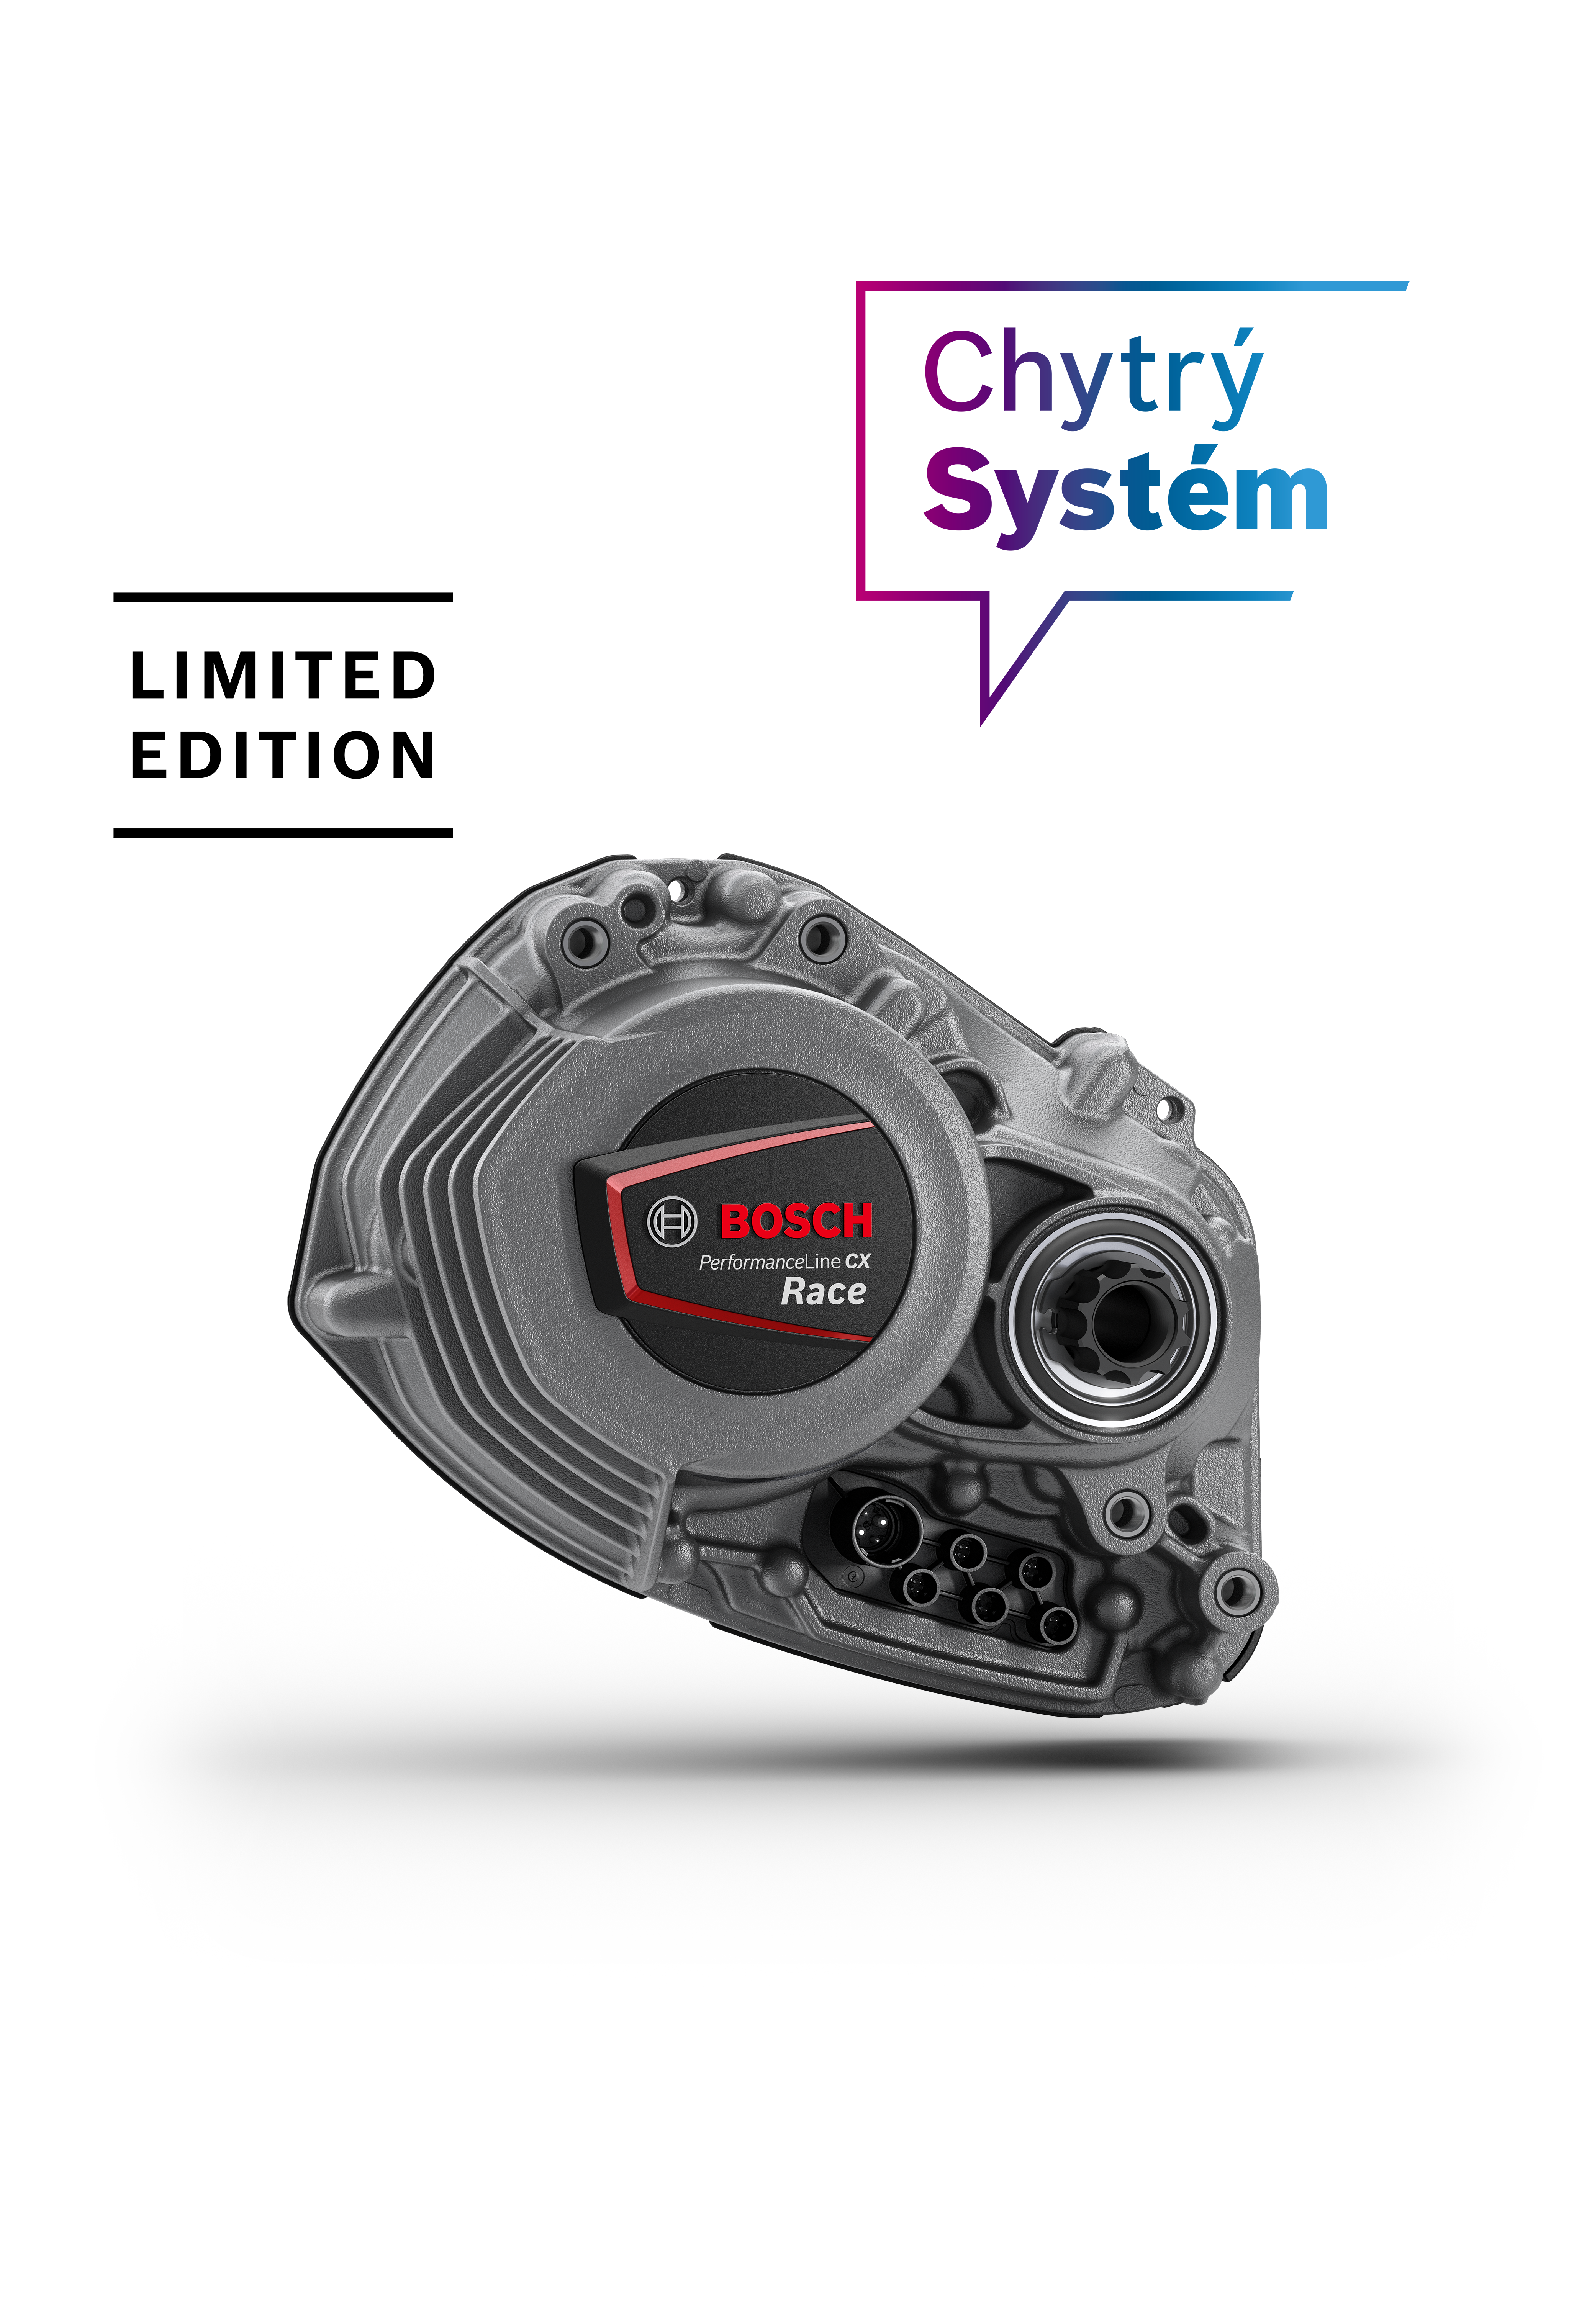 Nový pohon Performance Line CX Race Limited Edition s režimem Race nabízí energickou a přímou podporu s příspěvkem až 400 % k vlastnímu výkonu